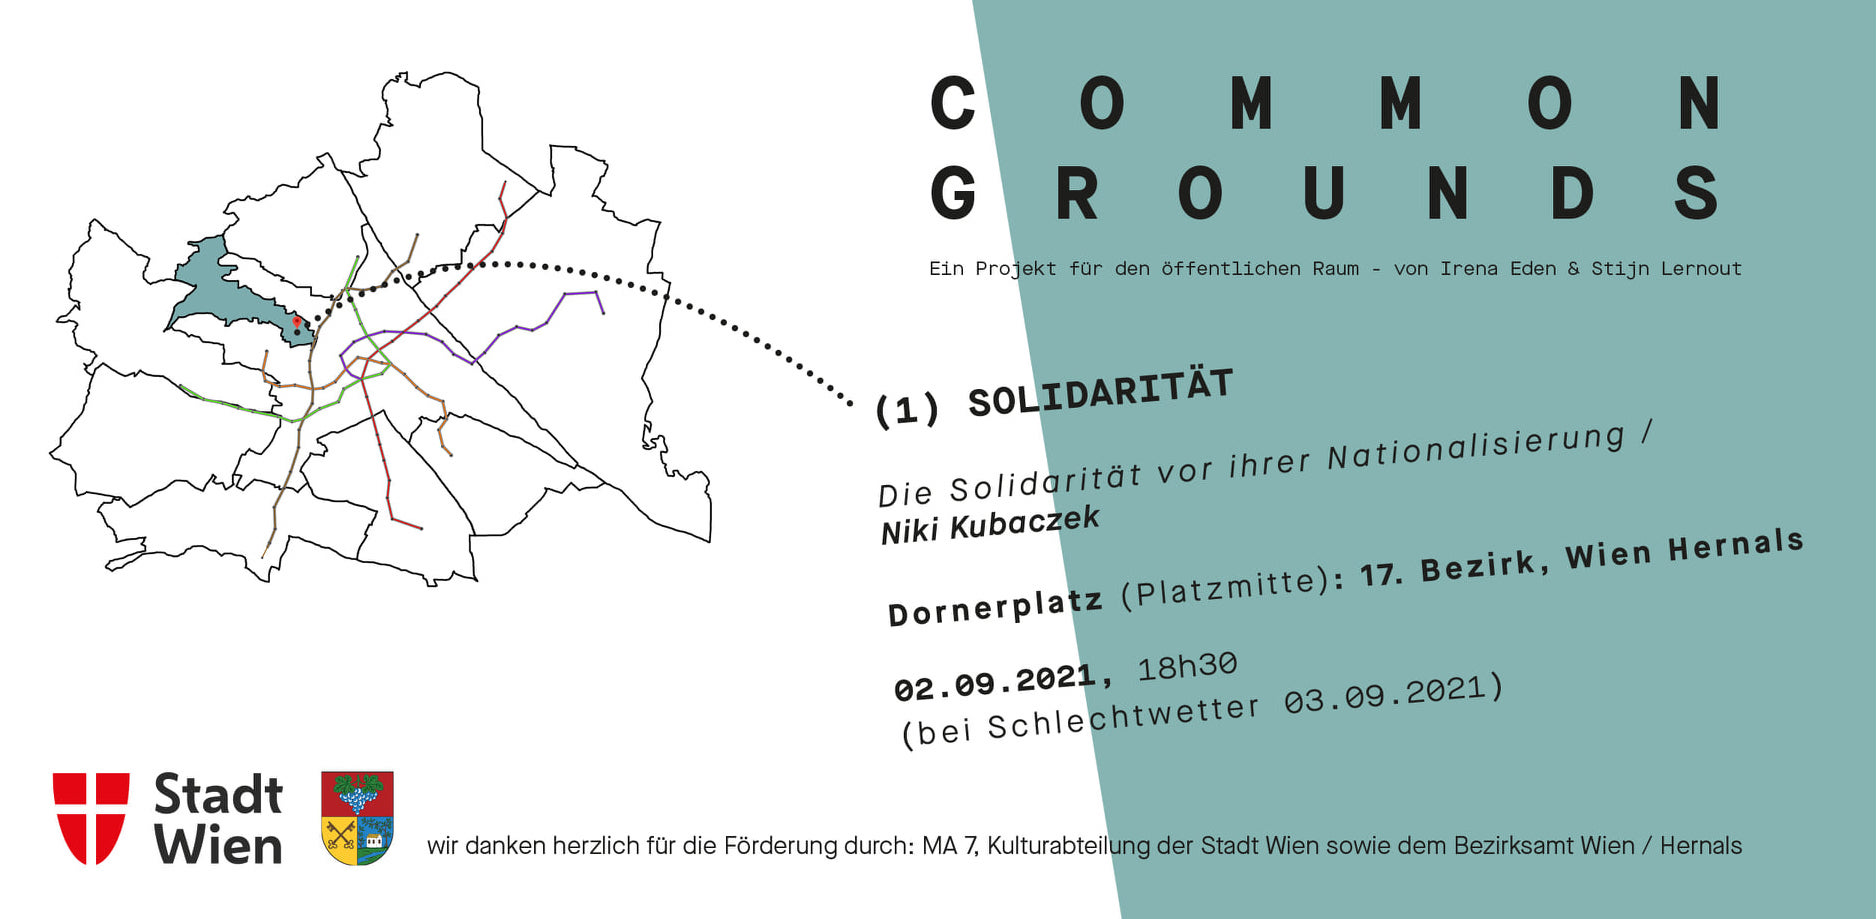 (c) Common-grounds.info